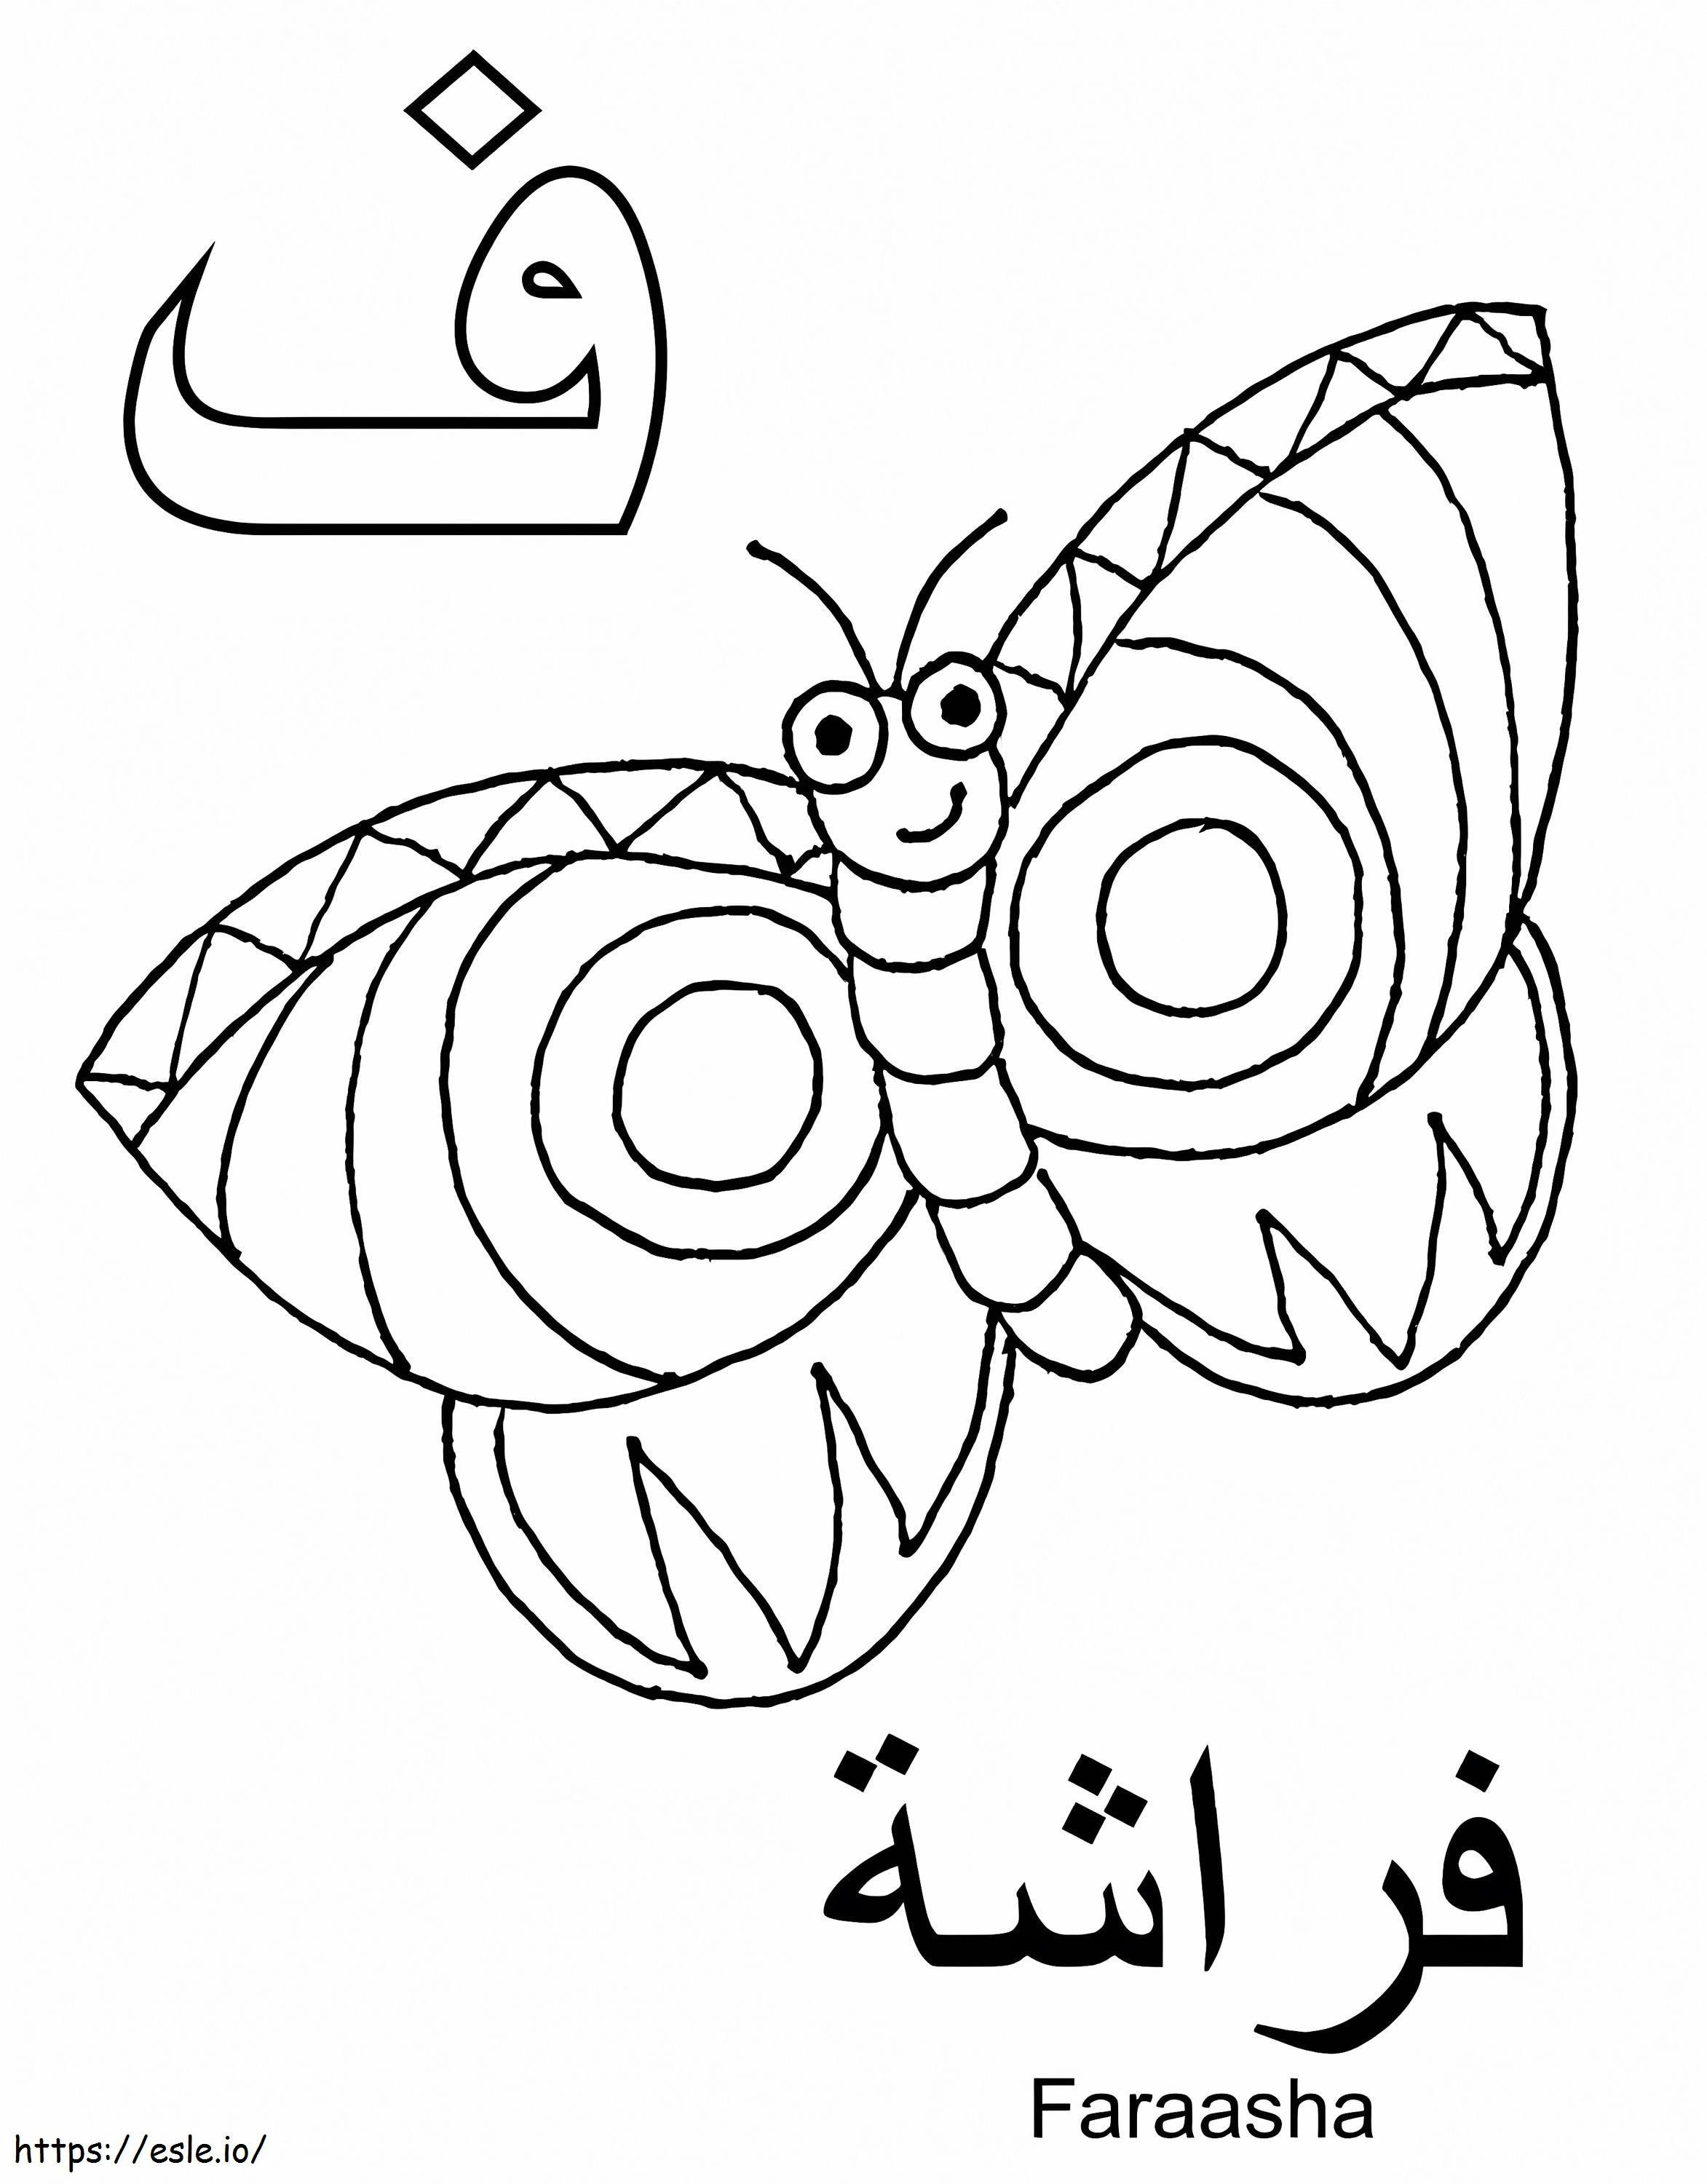 Alfabeto árabe Faraasha para colorear